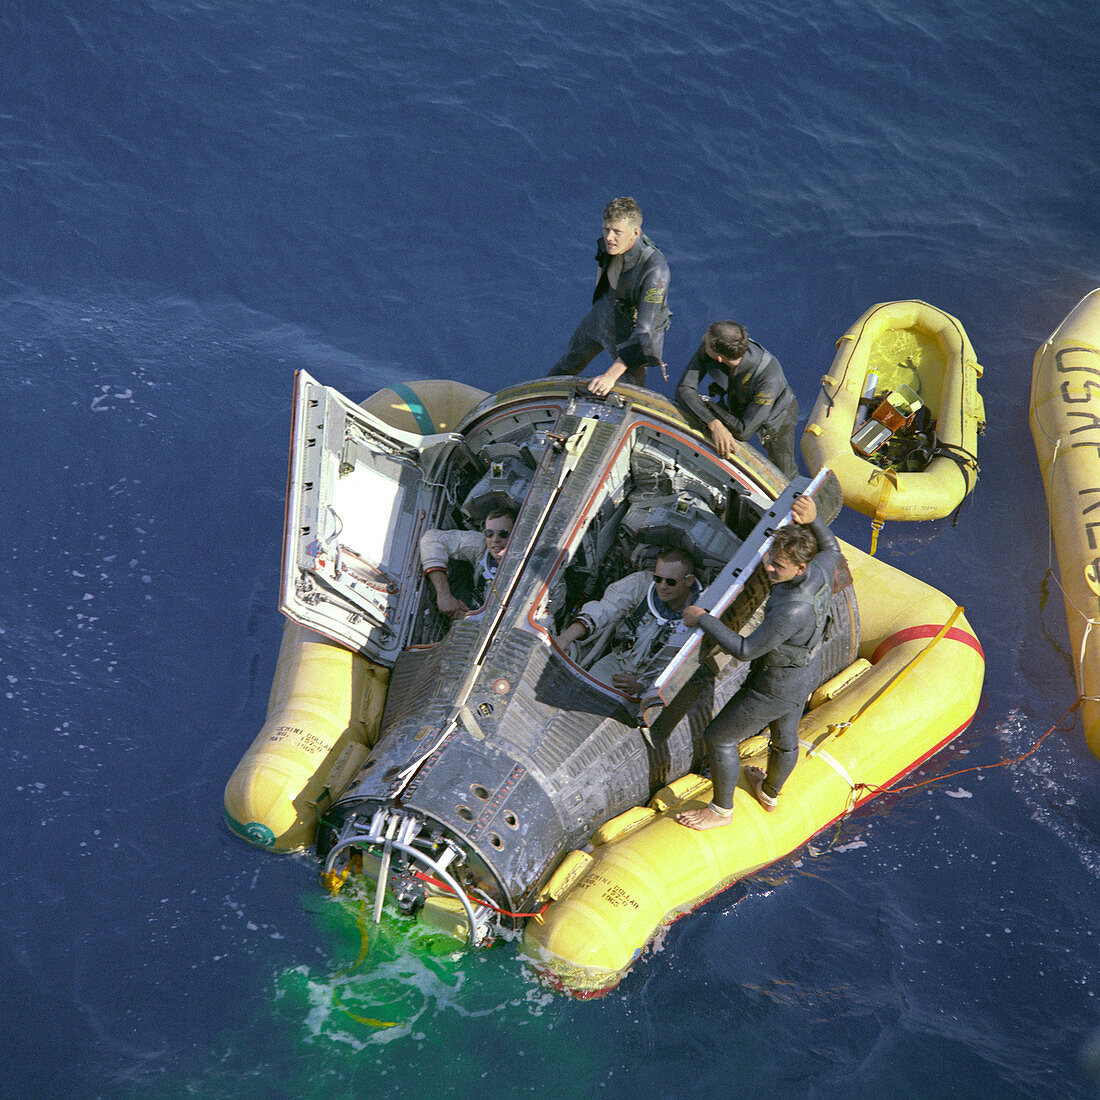 Gemini 8 mission rescue